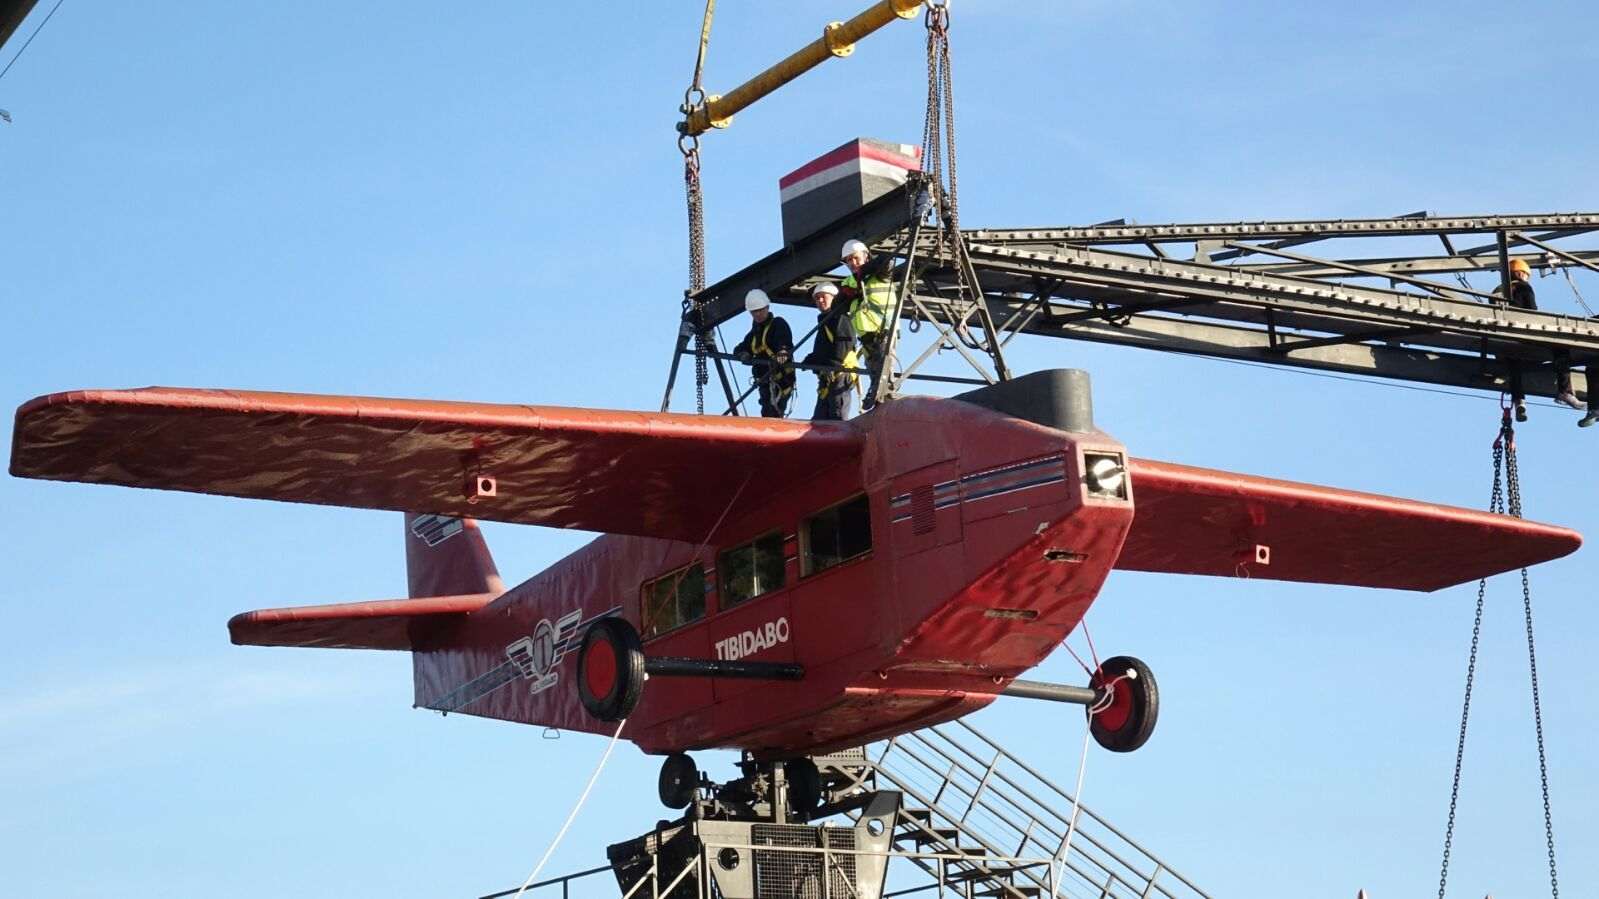 Desmunten l'històric avió del Tibidabo per reparar-lo